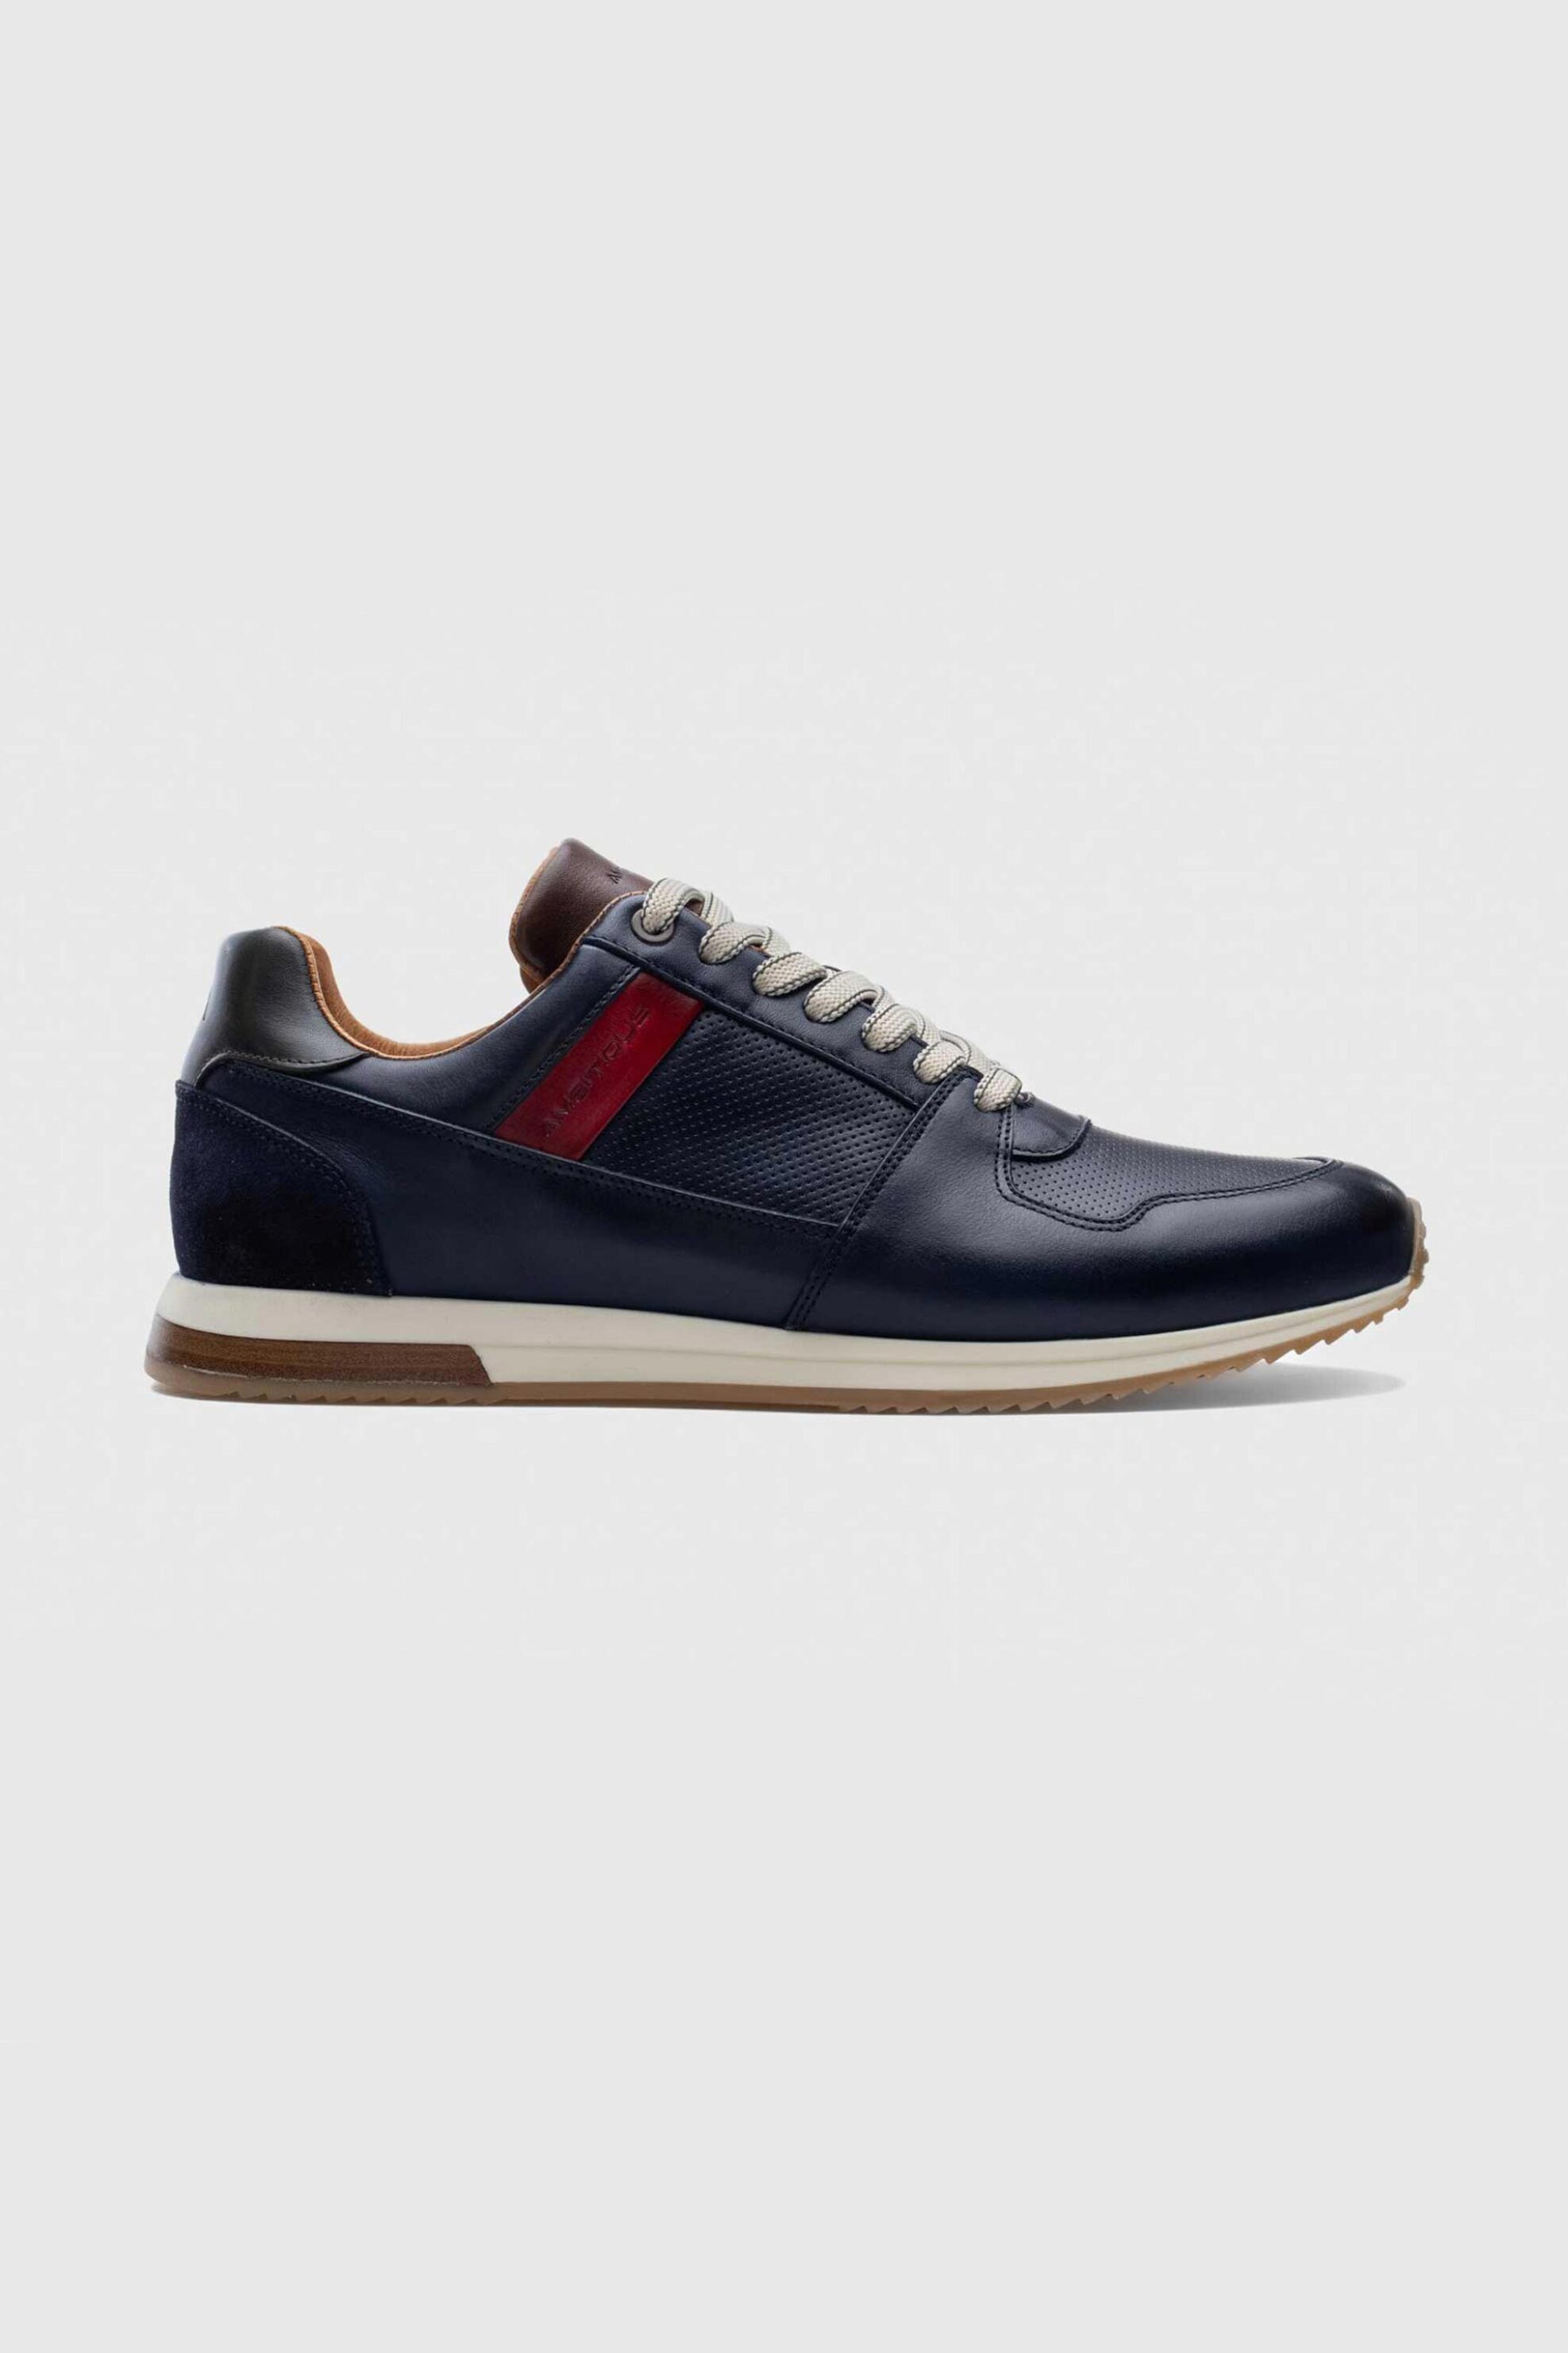 Ανδρική Μόδα > Ανδρικά Παπούτσια > Ανδρικά Sneakers Ambitious ανδρικά δερμάτινα sneakers "Slow" - E63584 Μπλε Σκούρο